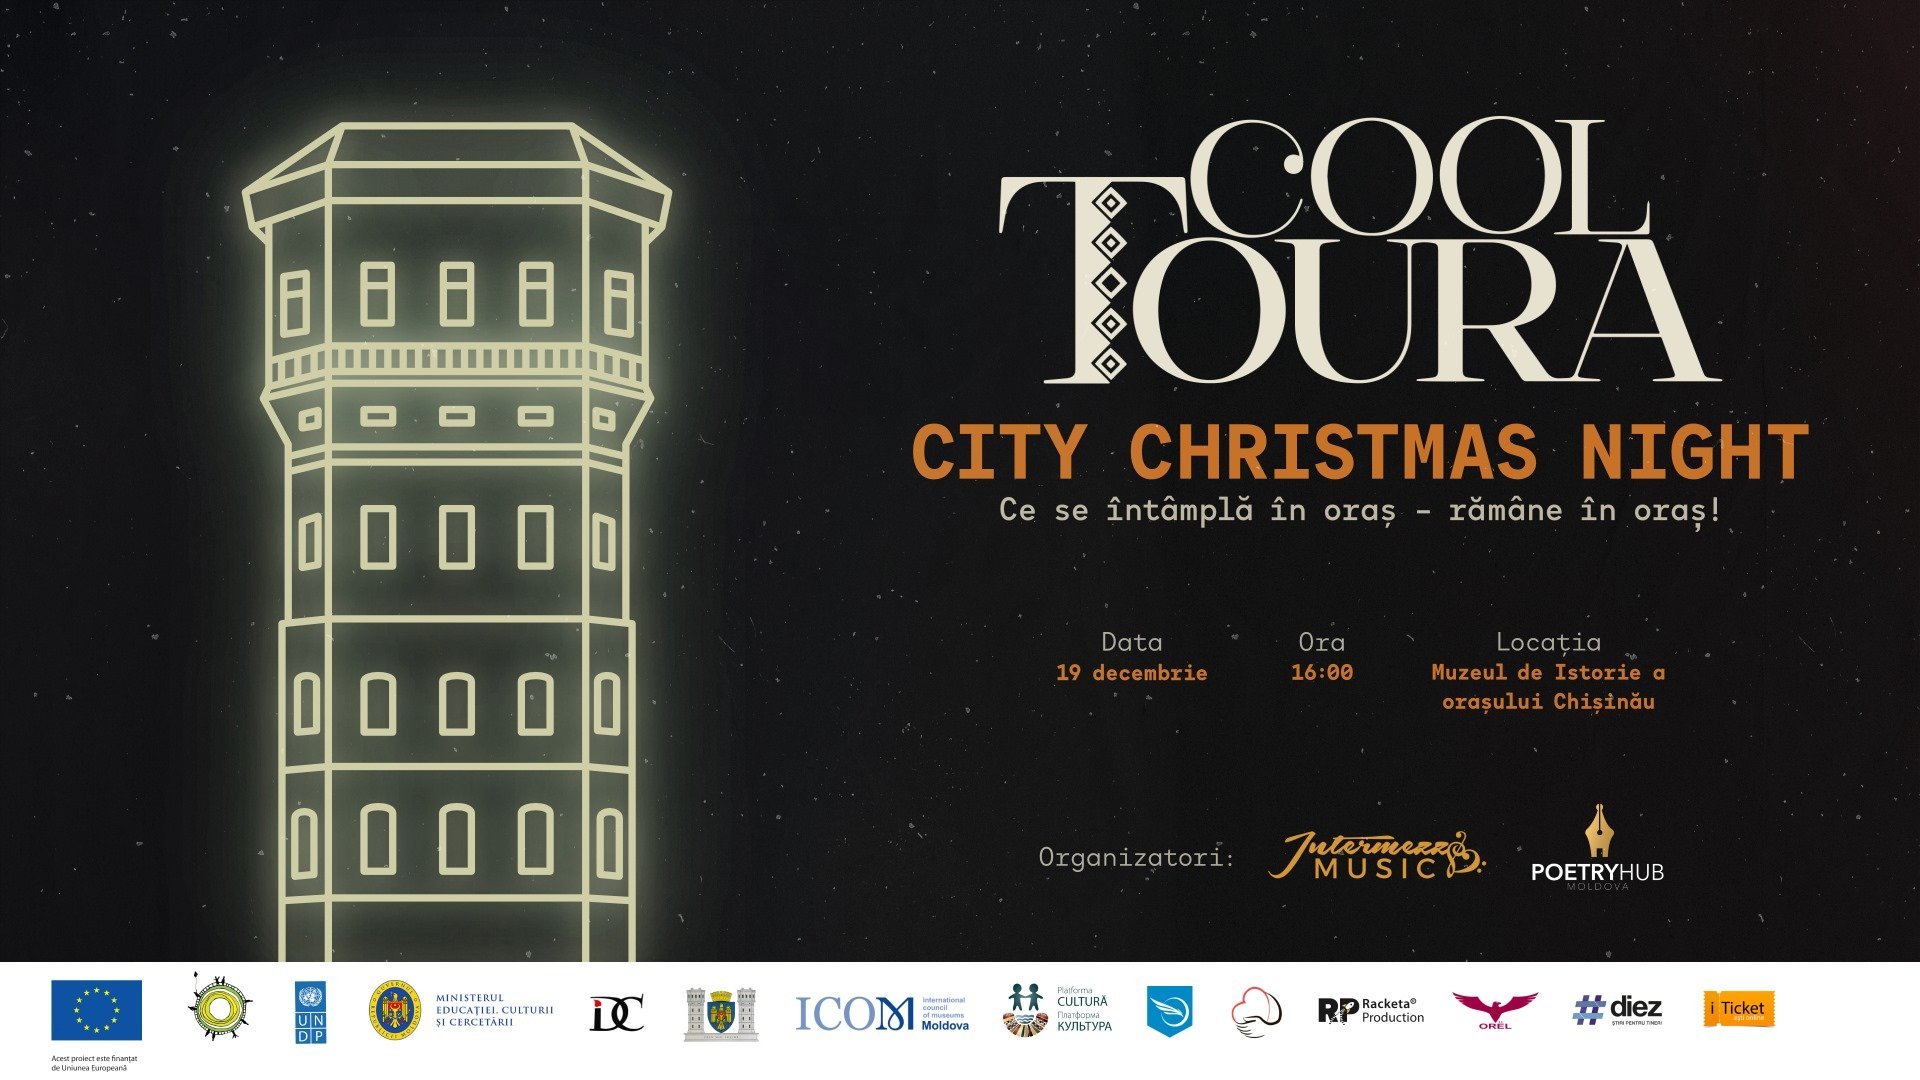 “City Christmas Night - Istorii de oraș“ Ce se întâmplă în oraș - rămâne în oraș